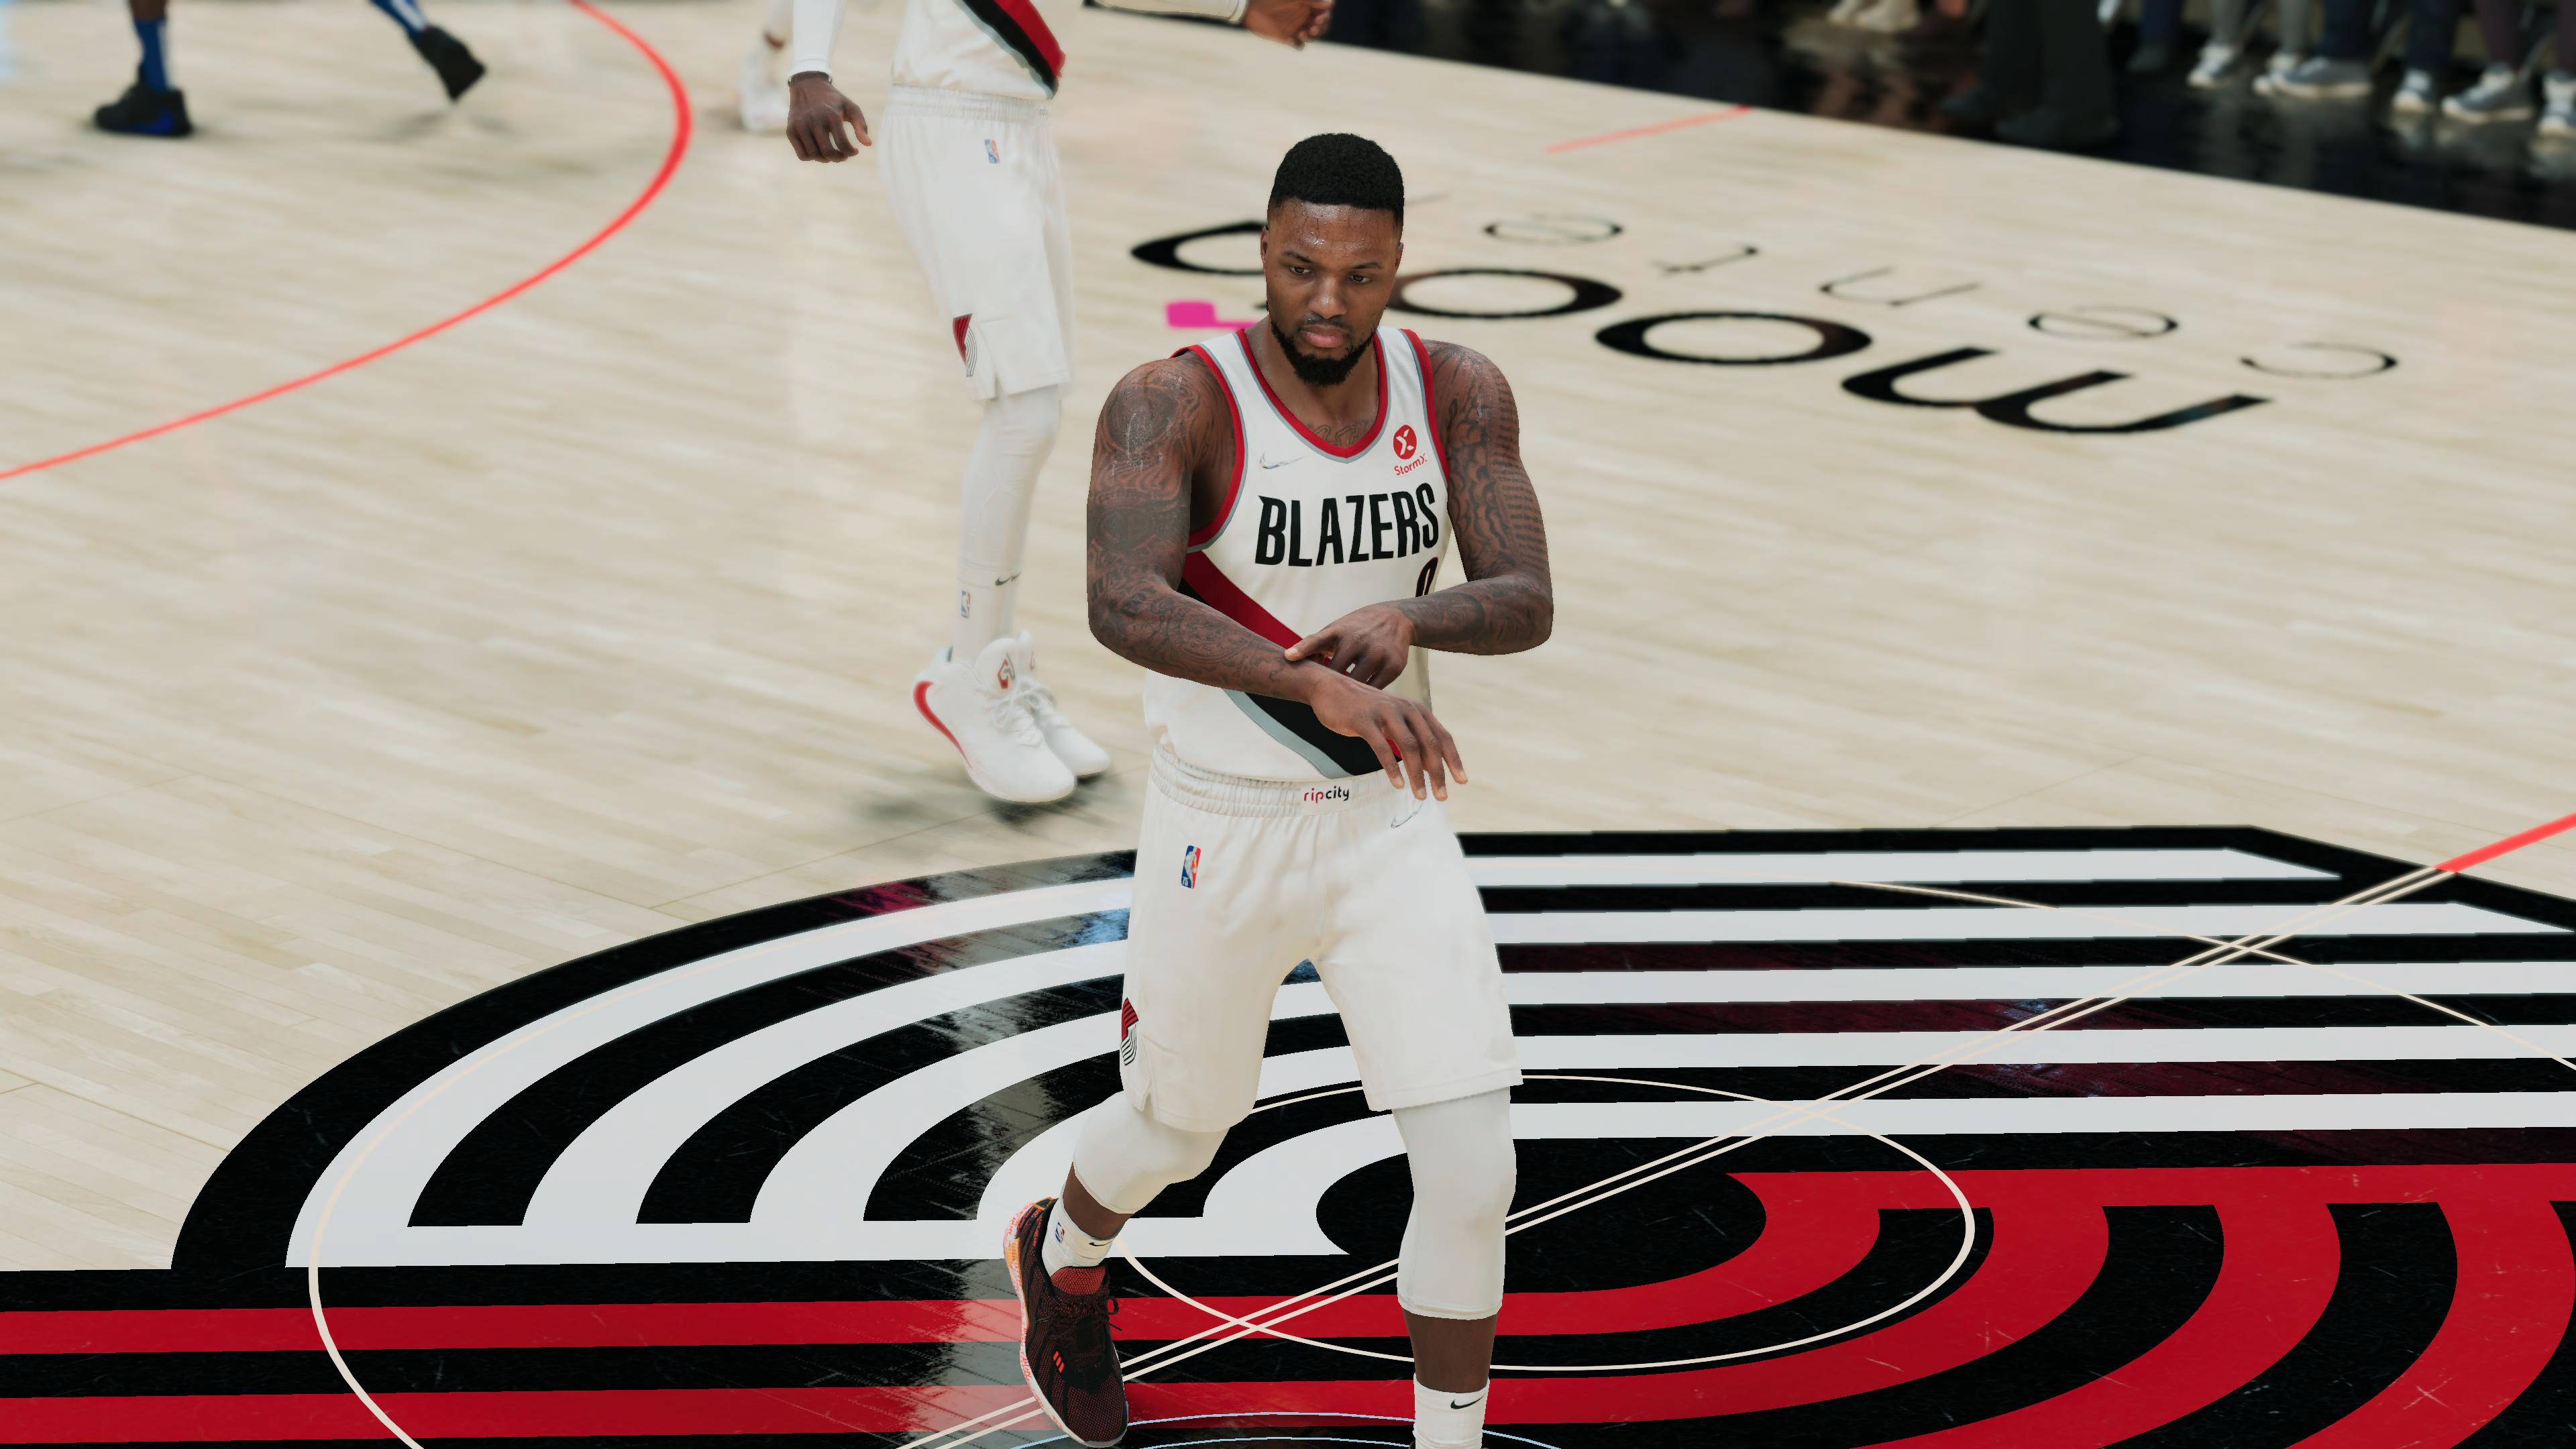 NBA2K Portland Trail Blazers Custom Jersey Concepts by @hooprstore 